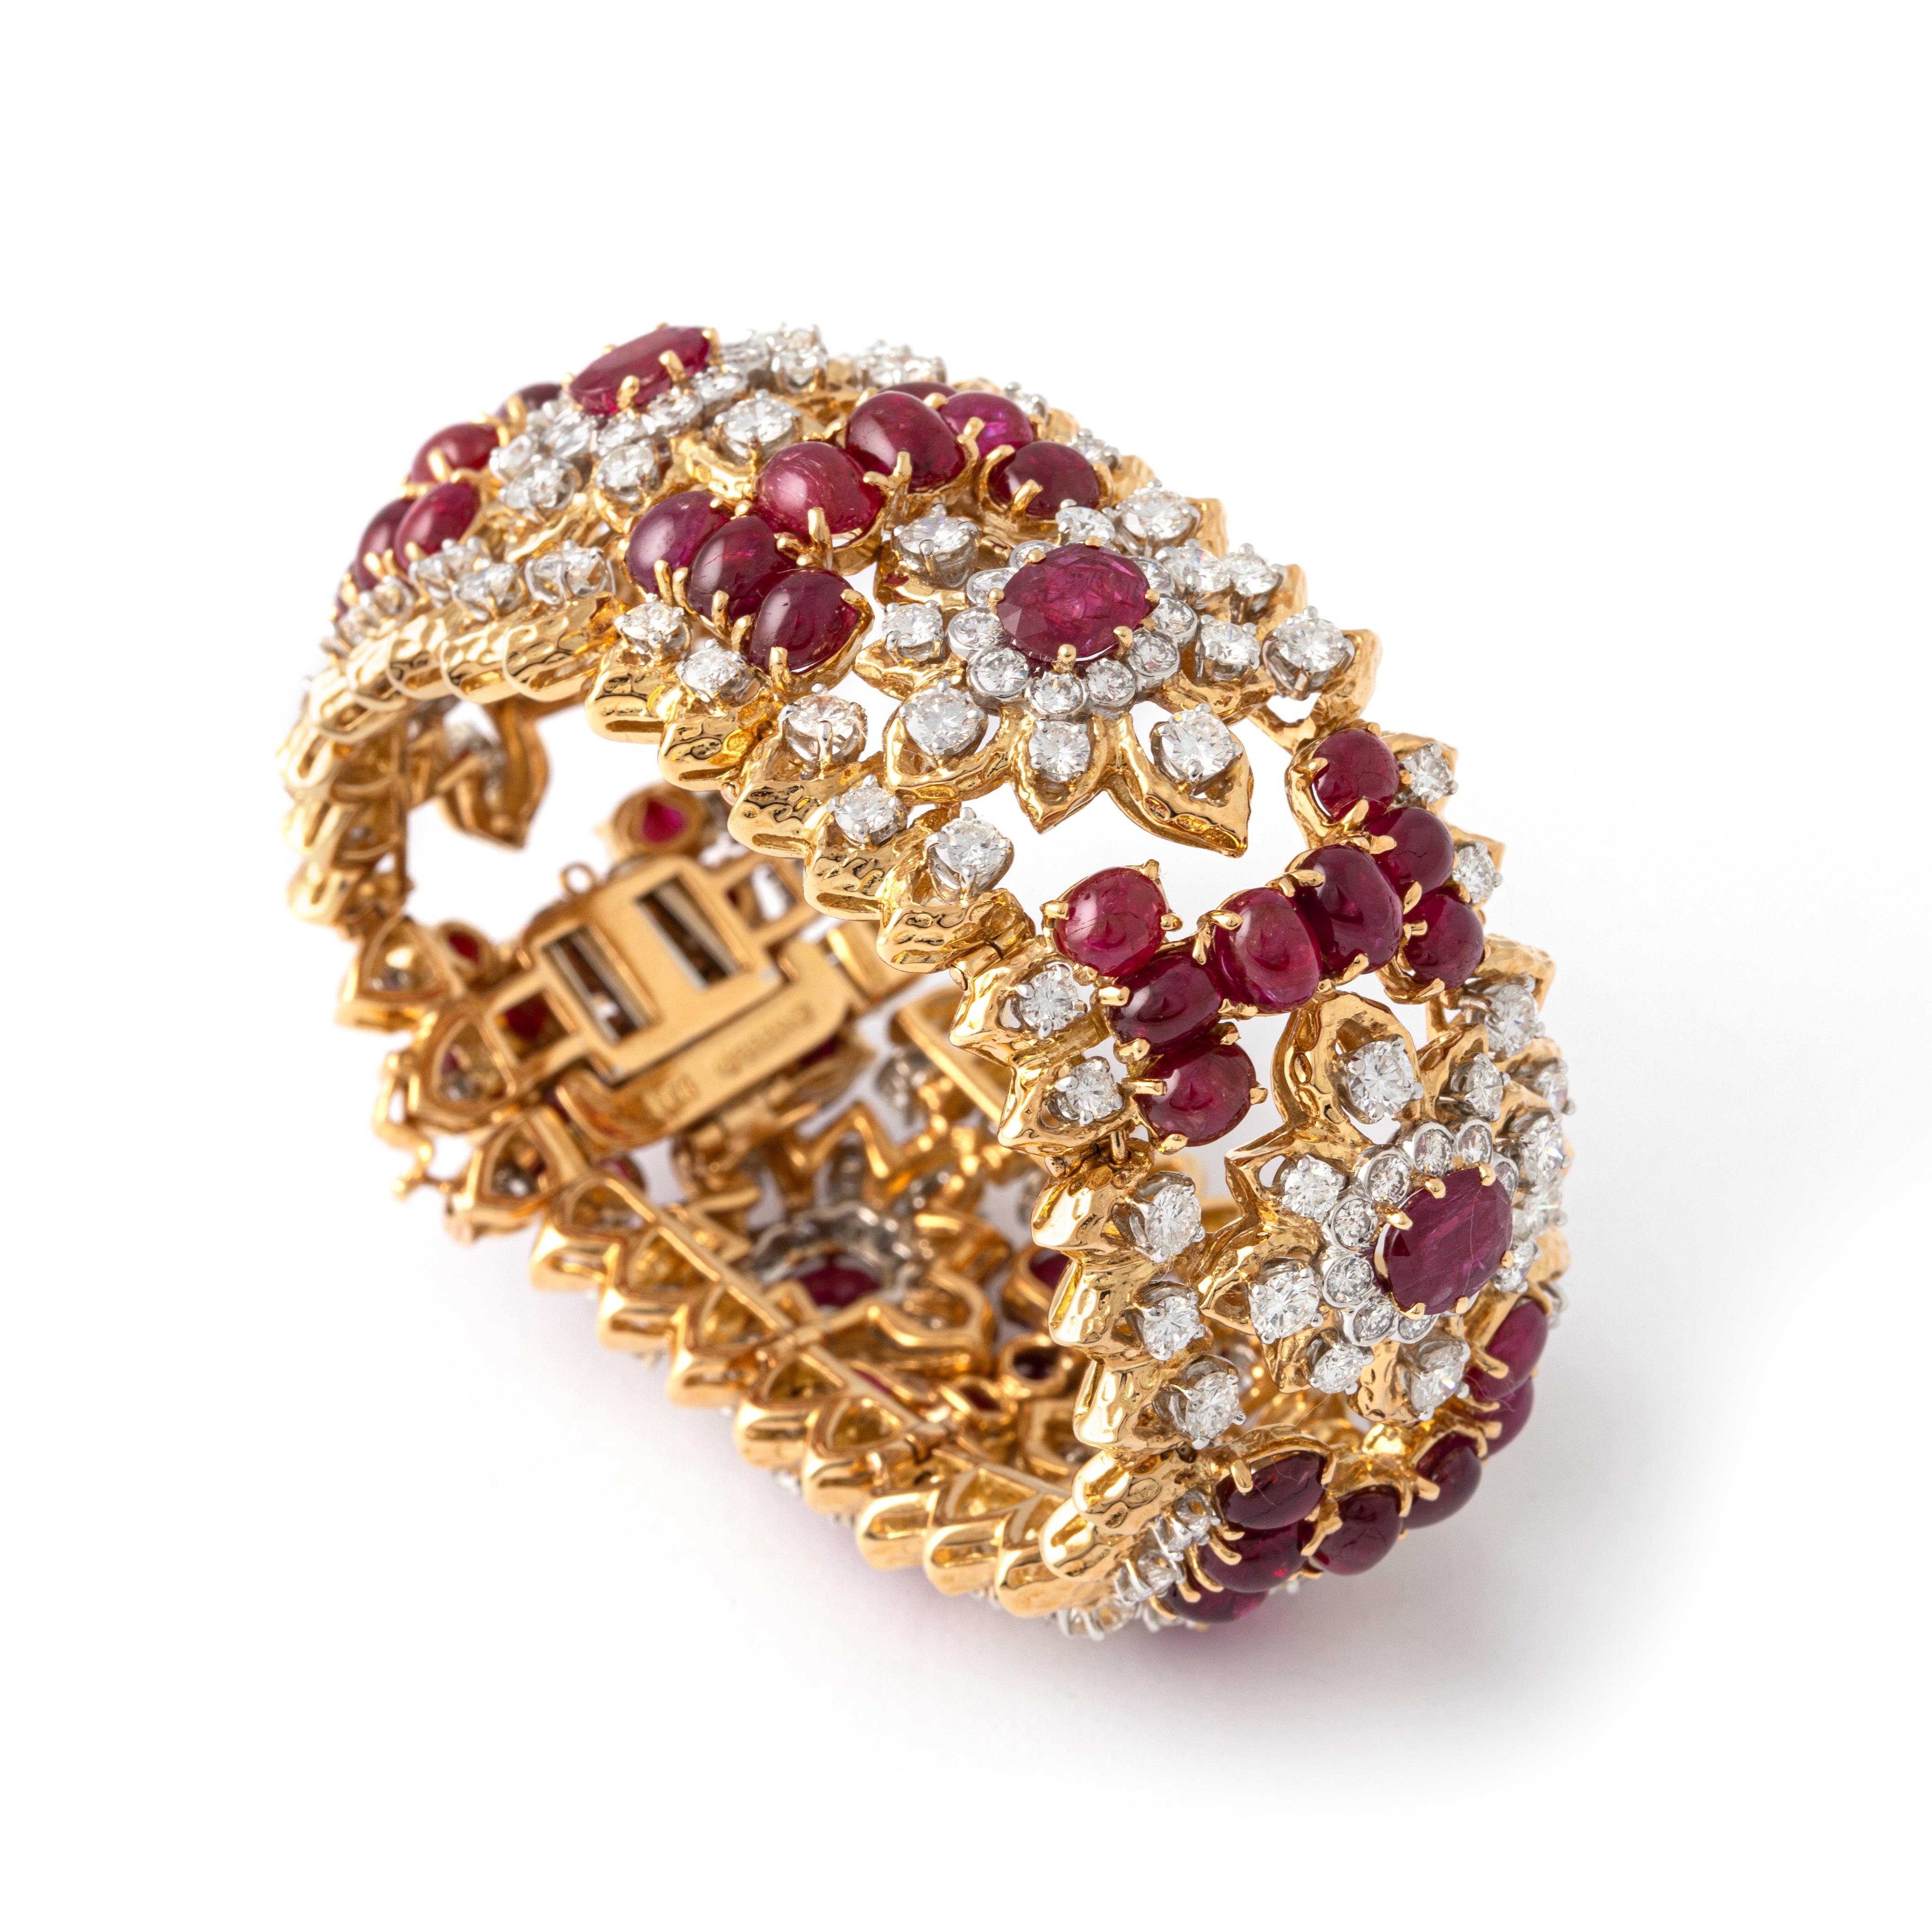 David Webb Armband aus 18 Karat Gold, Rubinen und Diamanten.
Das breite durchbrochene Armband ist mit ovalen Rubinen mit einem Gewicht von ca. 5,00 Karat, Cabochon-Rubinen und runden Diamanten mit einem Gewicht von ca. 15,15 Karat besetzt.